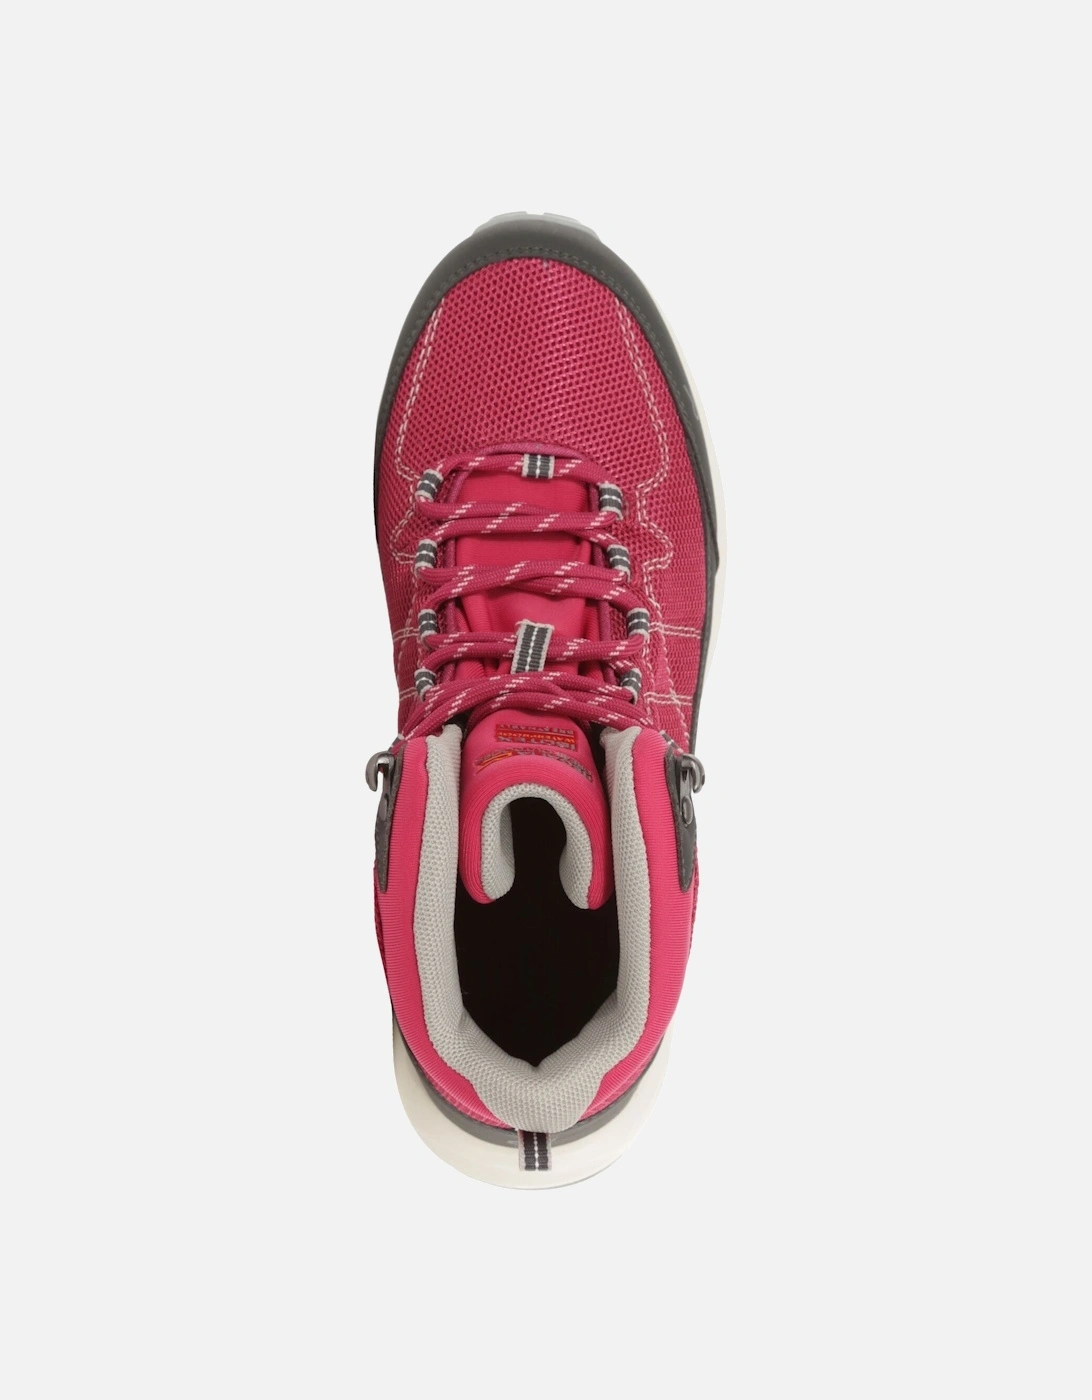 Womens/Ladies Samaris Lite Walking Boots